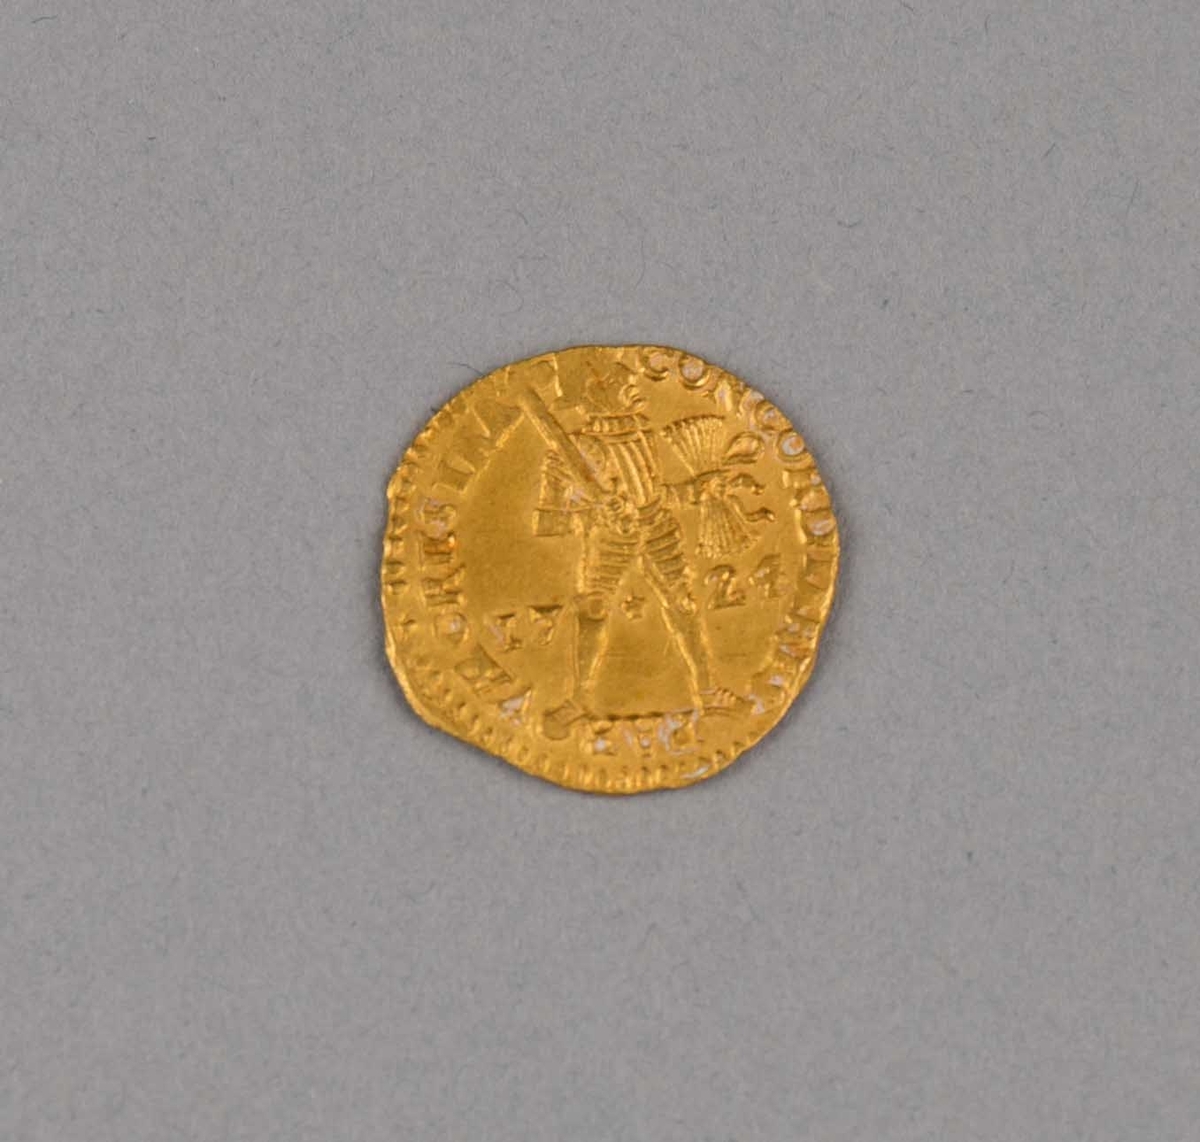 Rundefunnet, stort antall gull- og sølvmynter fra nederlandske ostindiafareren AKERENDAM som forliste på jomfruturen 8. mars 1725 utenfor Ålesund på Sunnmøre.

1 stk.  Gull dukat Utrecht fra 1724